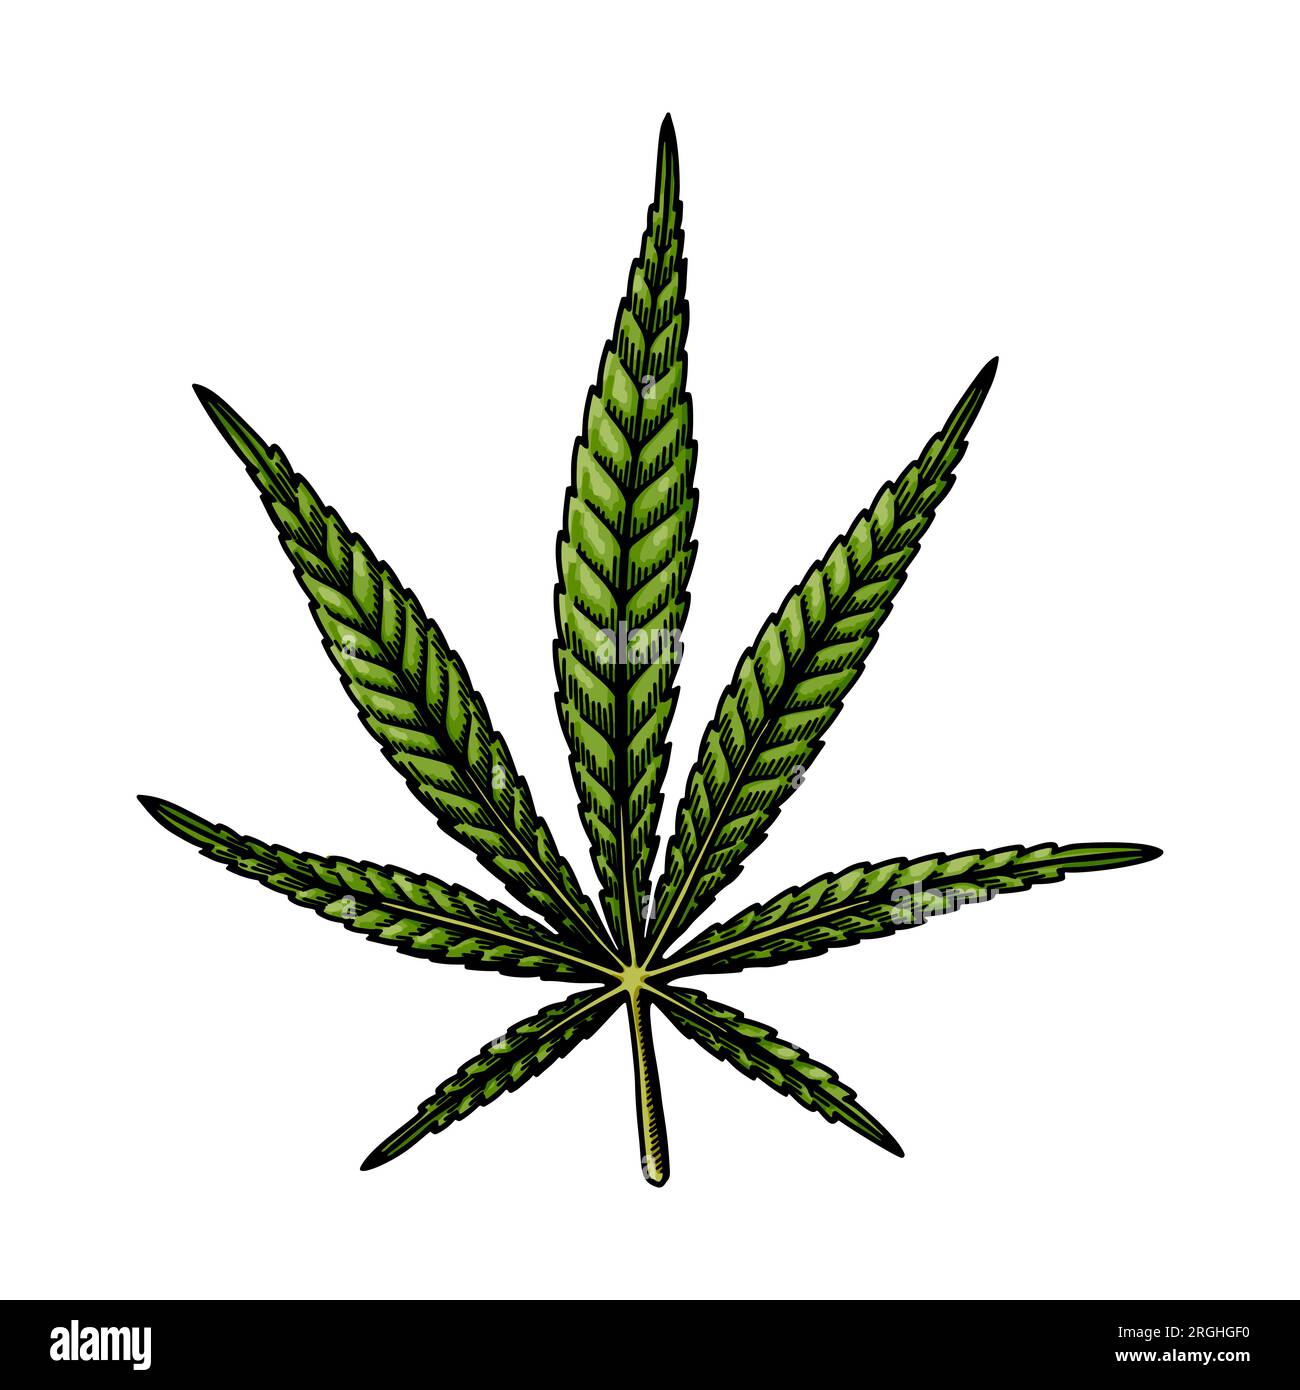 Bozzetto di foglie sativa di cannabis. Disegno botanico sulla marijuana. Illustrazione vettoriale disegnata a mano Illustrazione Vettoriale